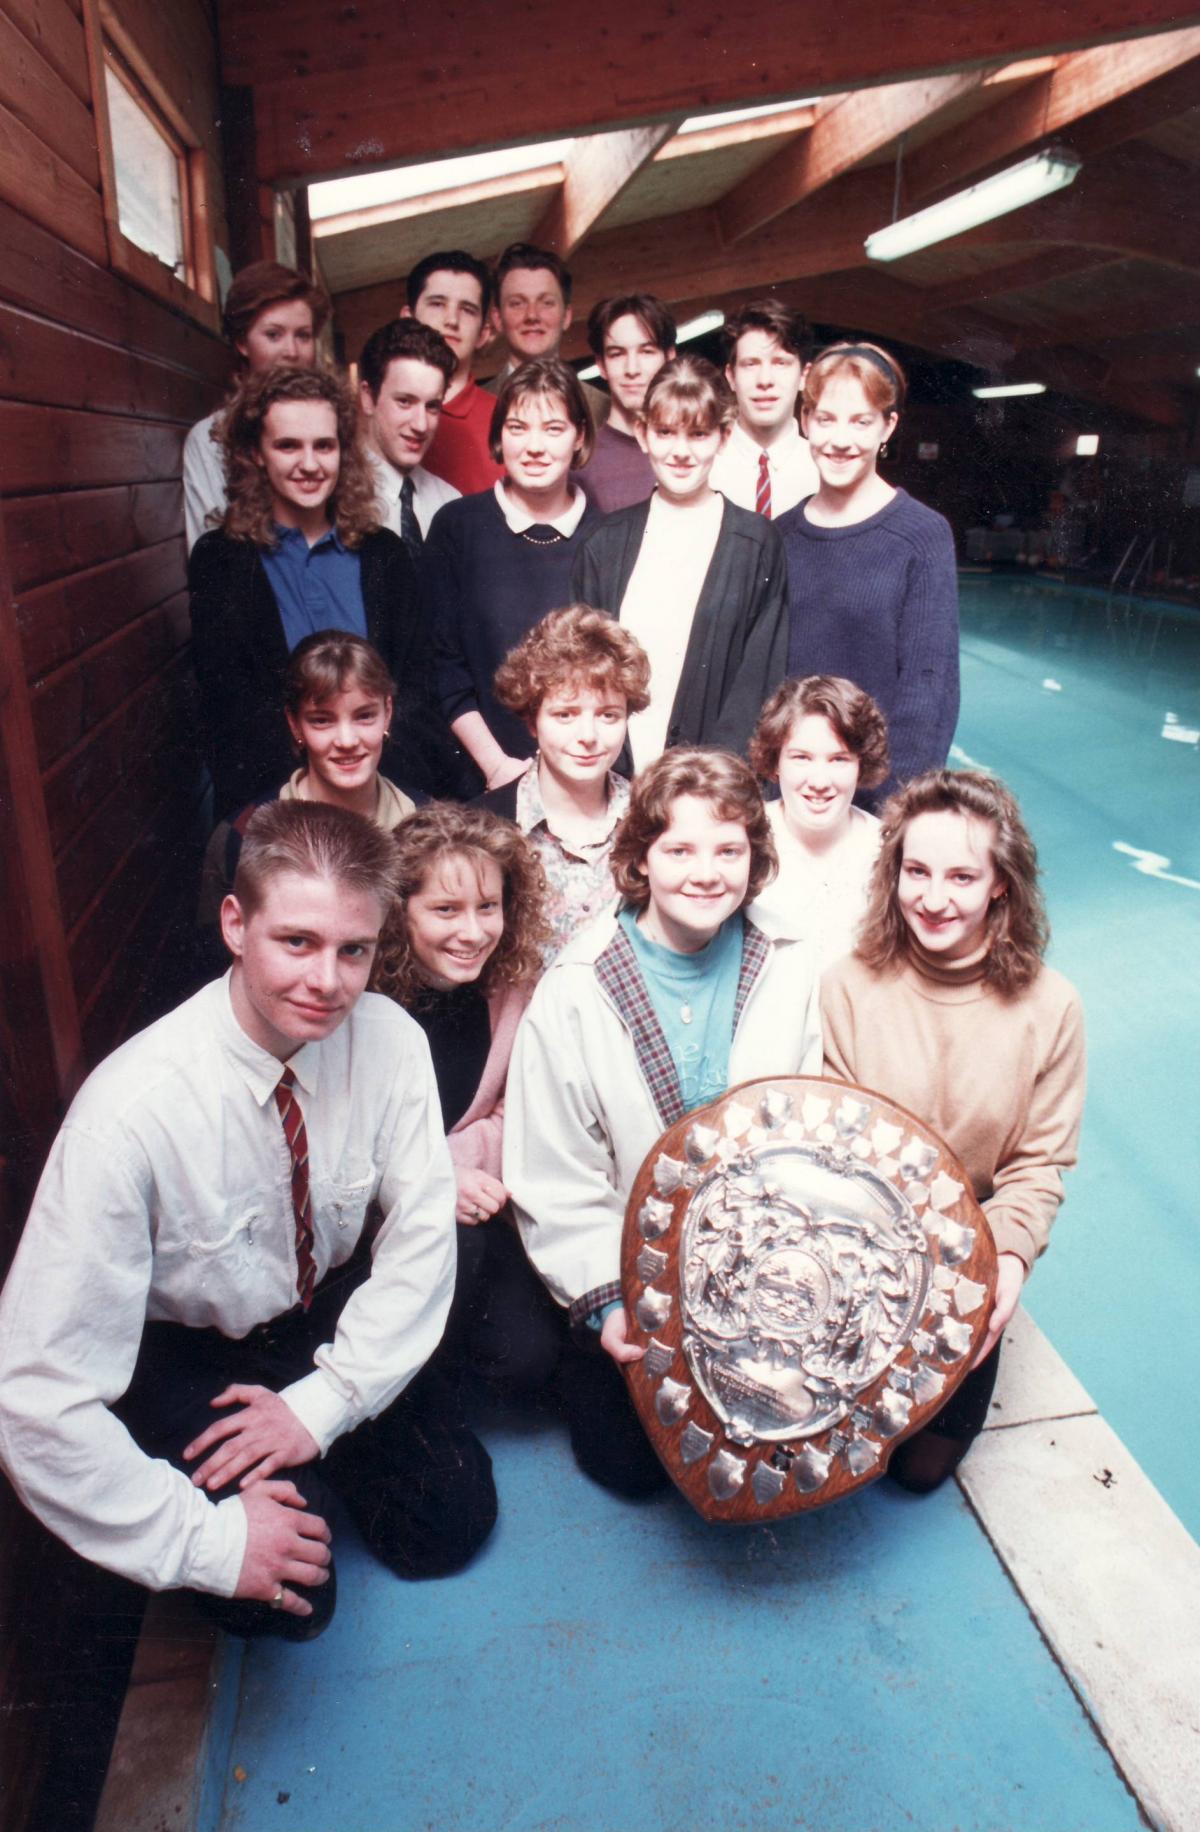 Life-saving awards in 1992